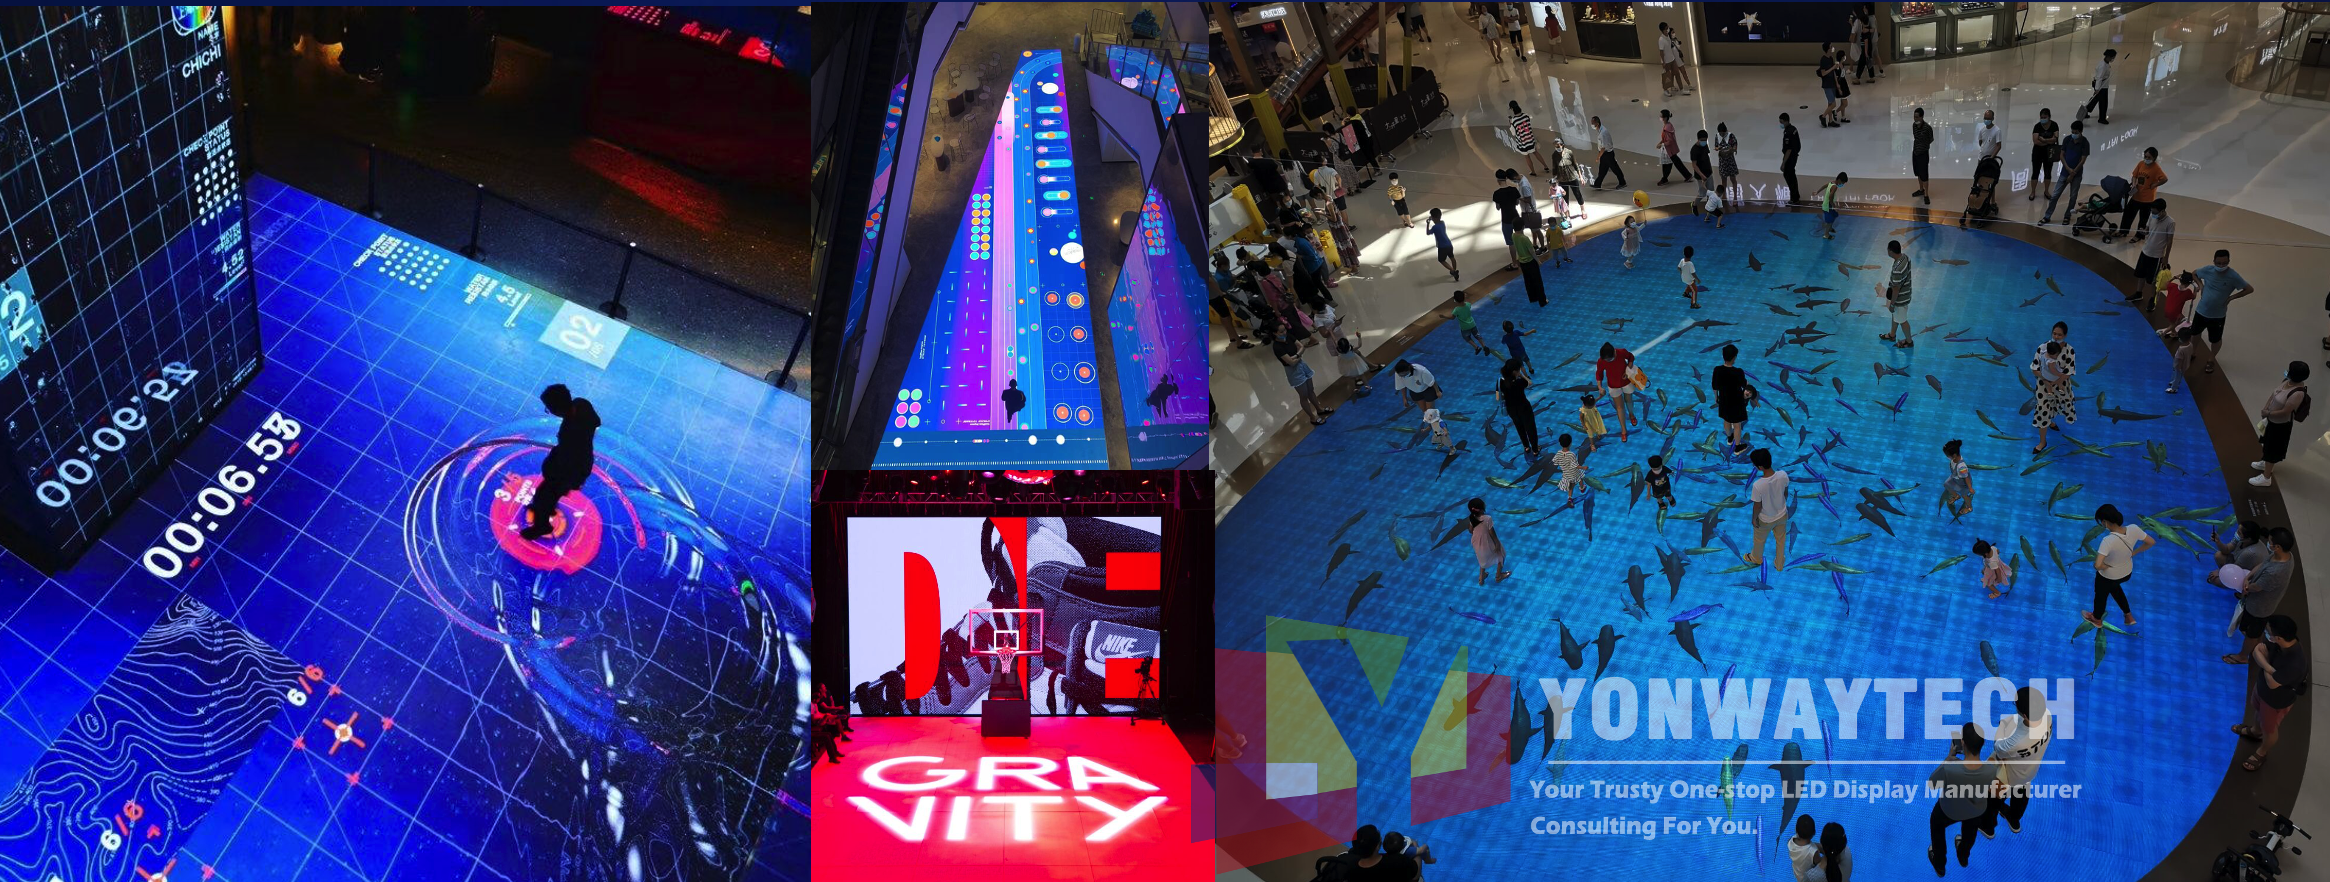 centro comercial pista de baile pantalla led interacción video pared centro